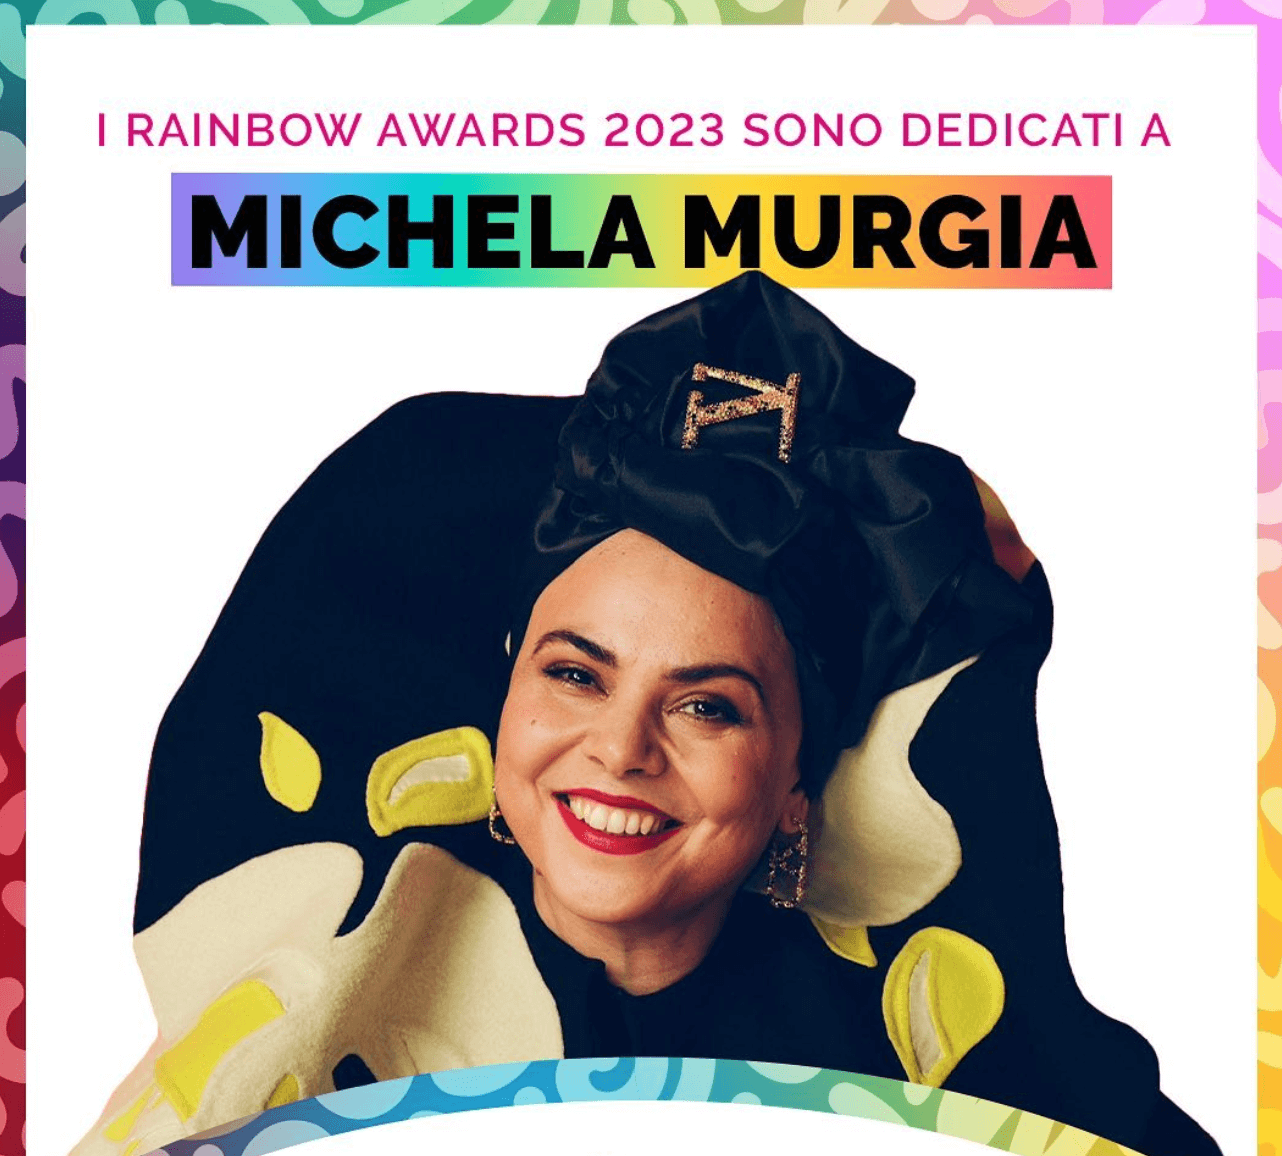 Rainbow Awards 2023, la 2a edizione dedicata a Michela Murgia. Tra i premiati Elly Schlein, Gualtieri ed Emma Bonino - Rainbow Awards 2023 Murgia - Gay.it